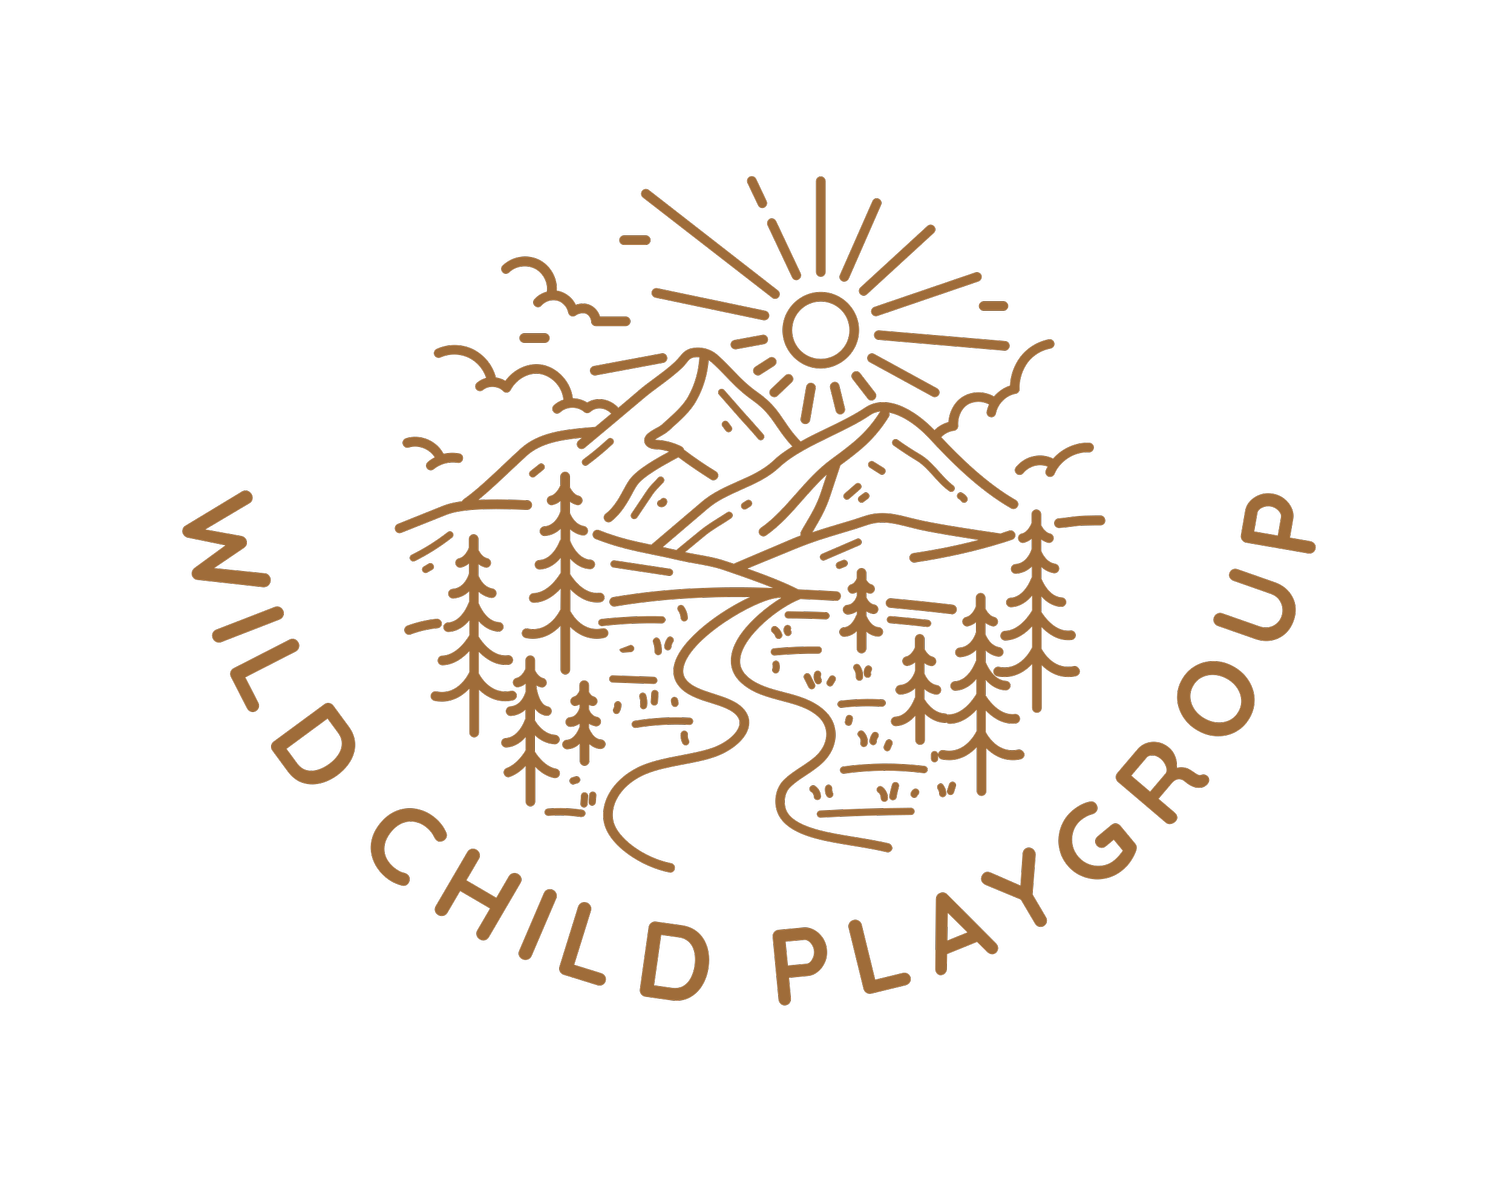 Wild Child Playgroup